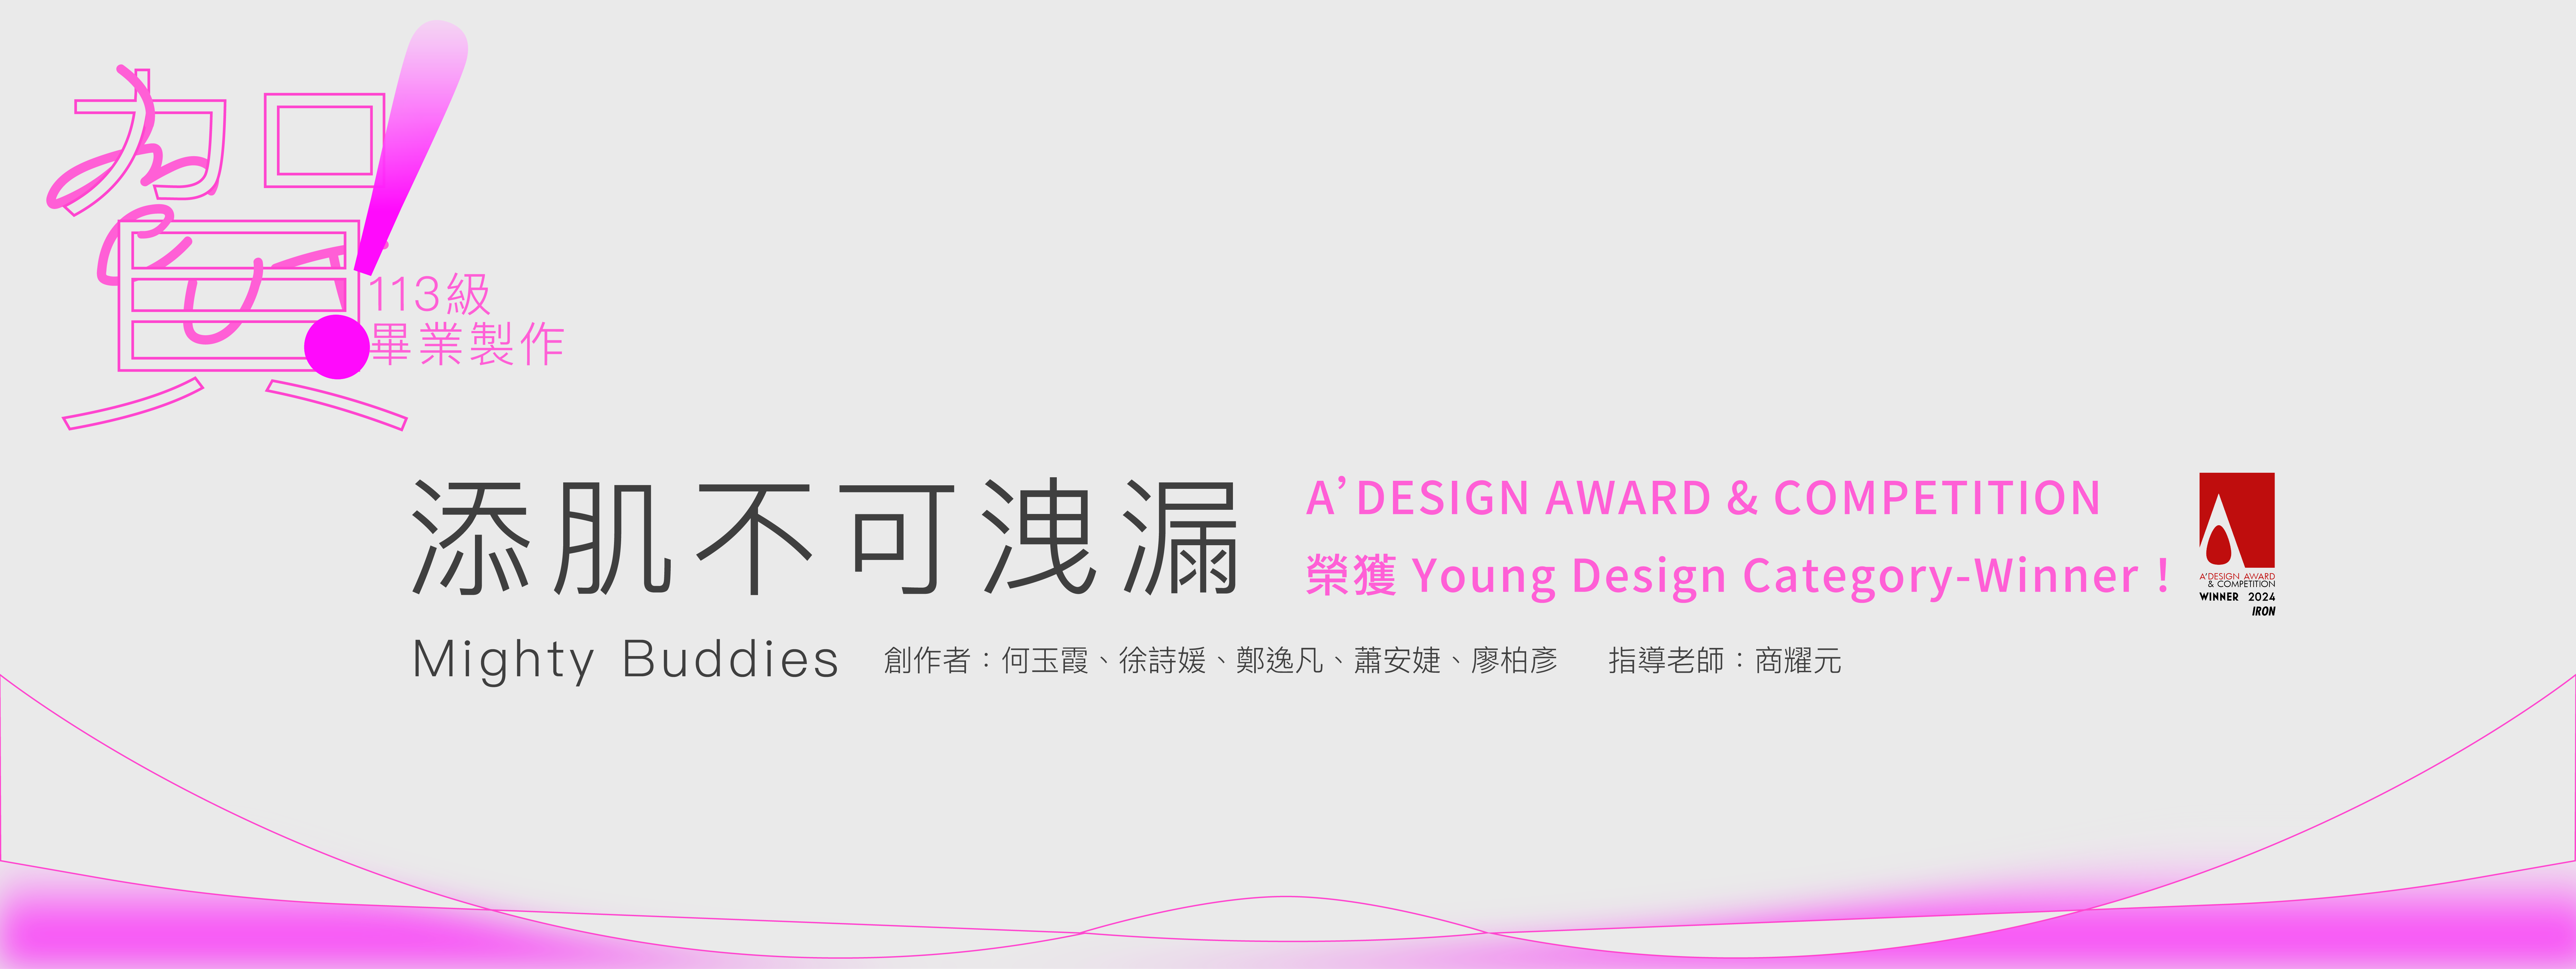 【賀】商耀元老師指導113級畢業製作「添肌不可洩漏」參加「A’ DESIGN AWARD & COMPETITION」榮獲 Young Design Category-Winner！(另開新視窗)